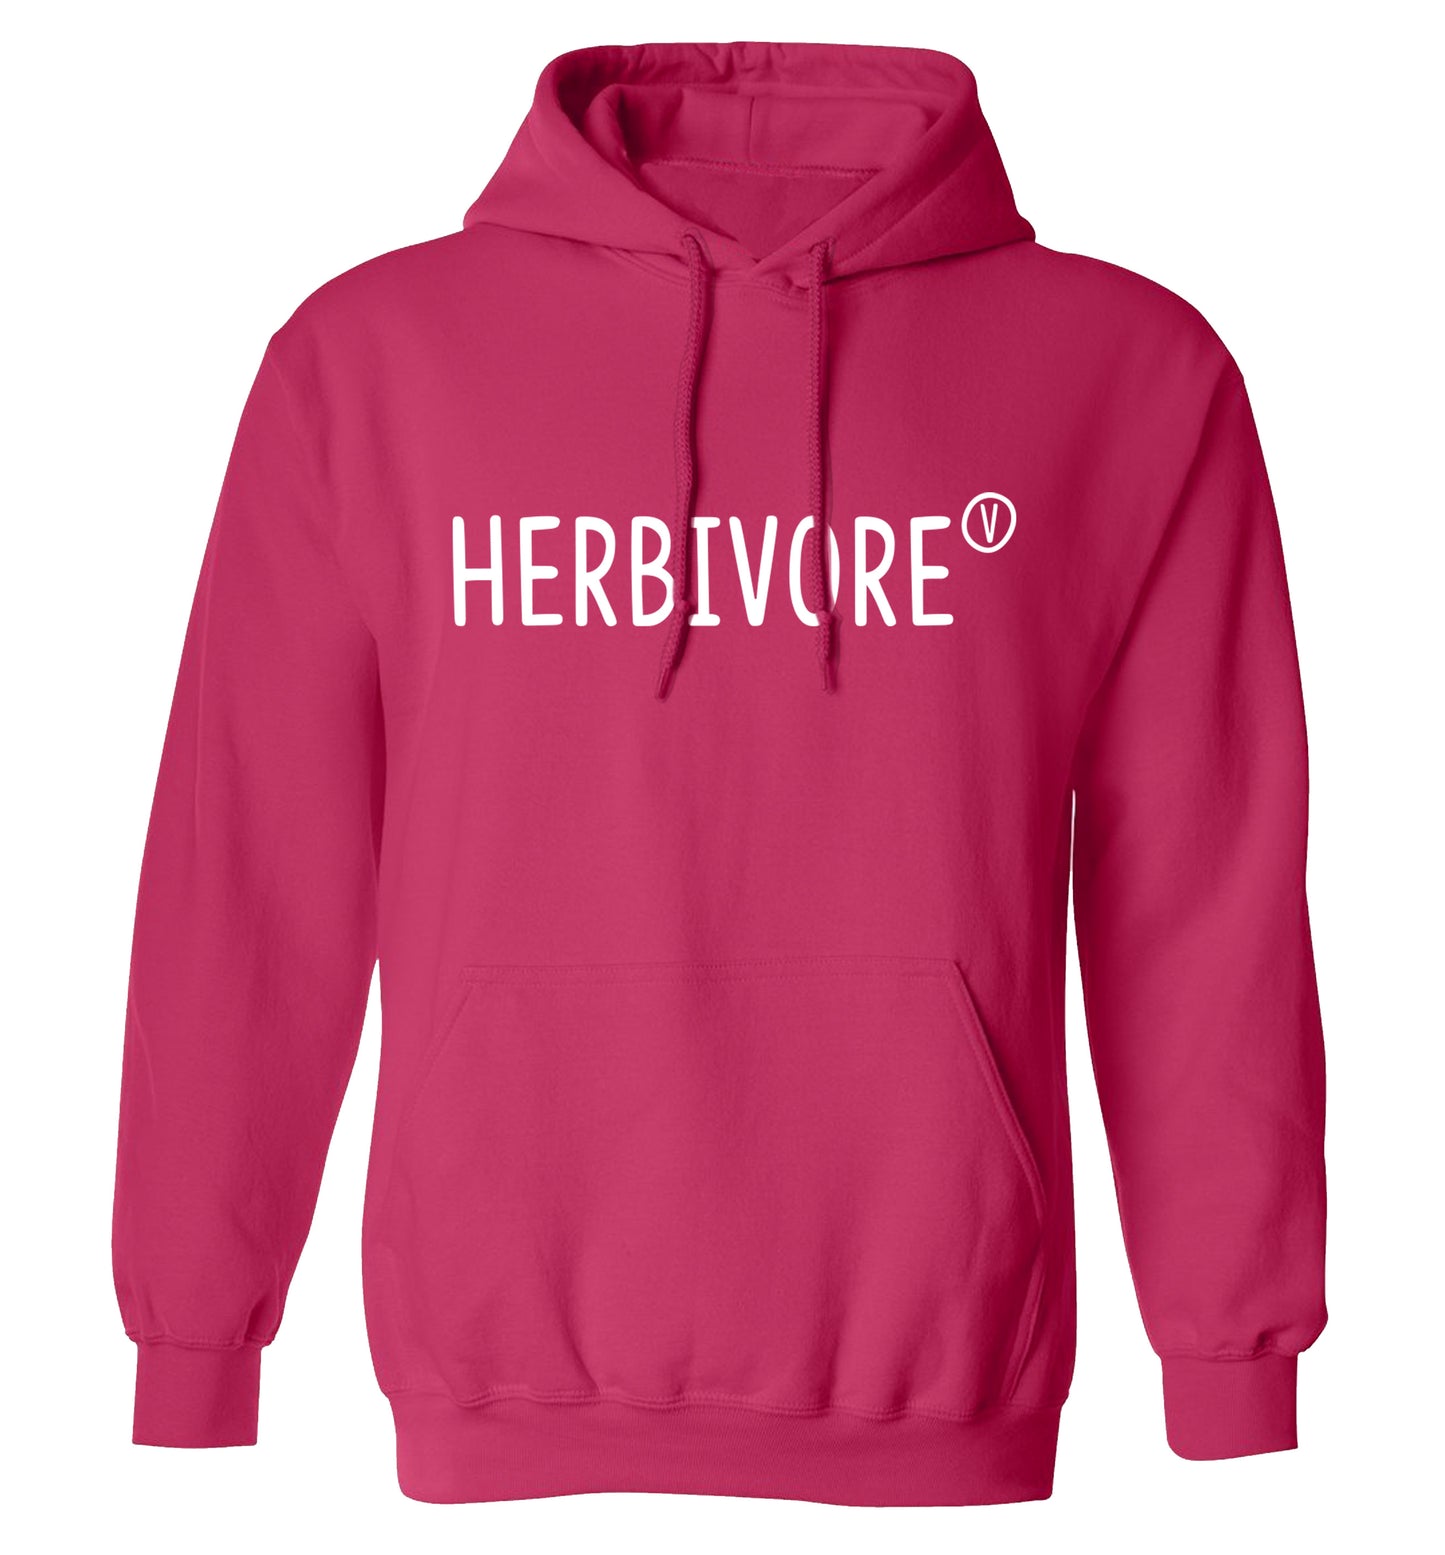 Herbivore adults unisex pink hoodie 2XL